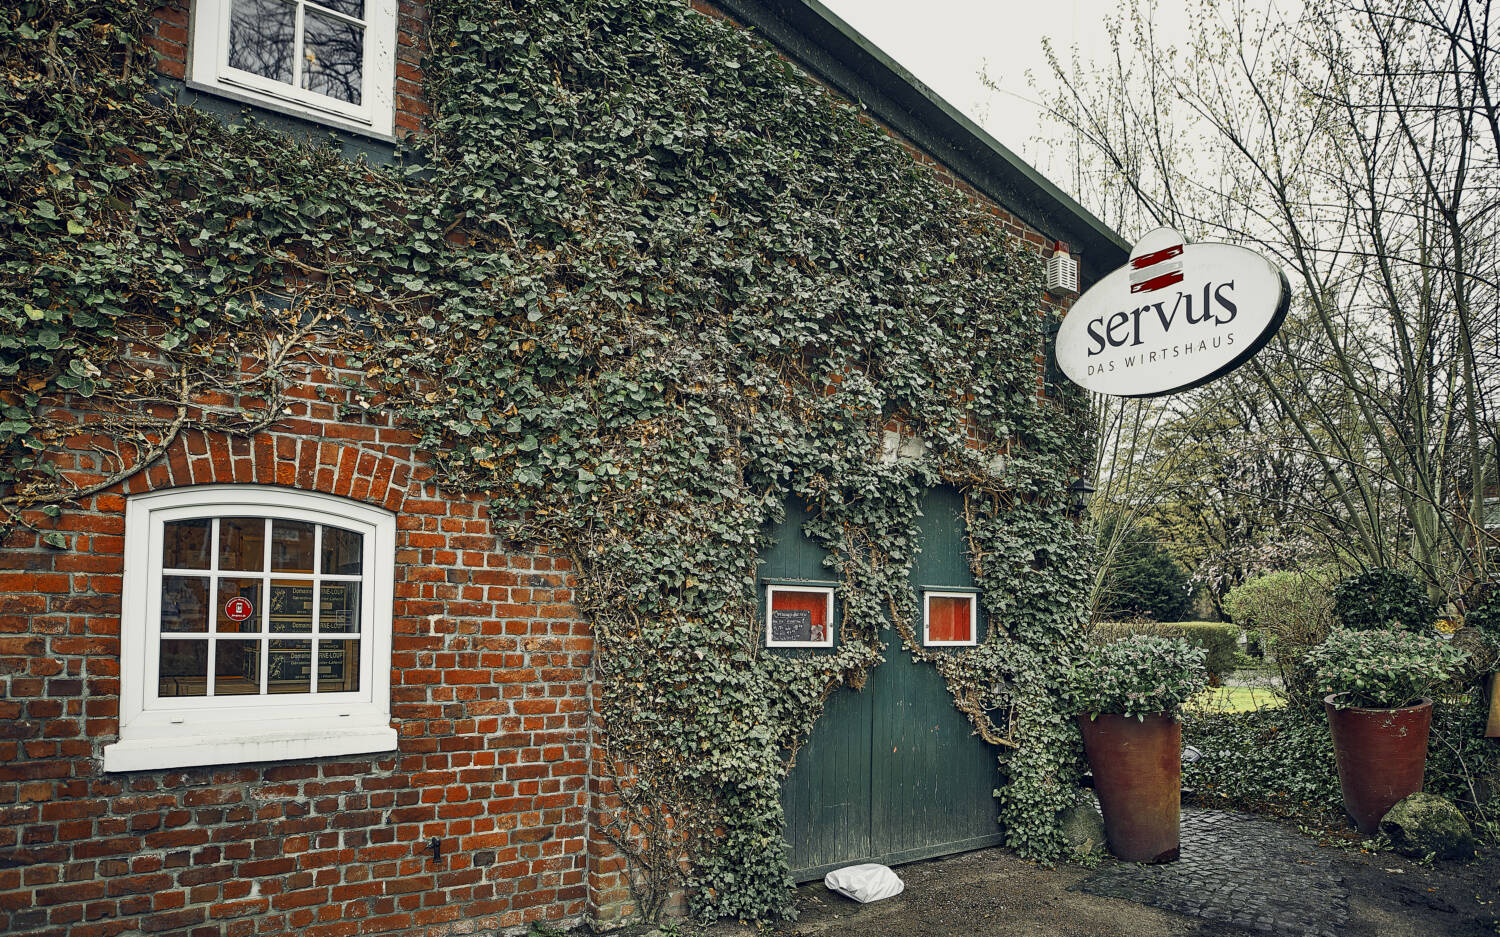 Das Restaurant Servus hat seit dem 1. Februar geschlossen / ©Marc Sill